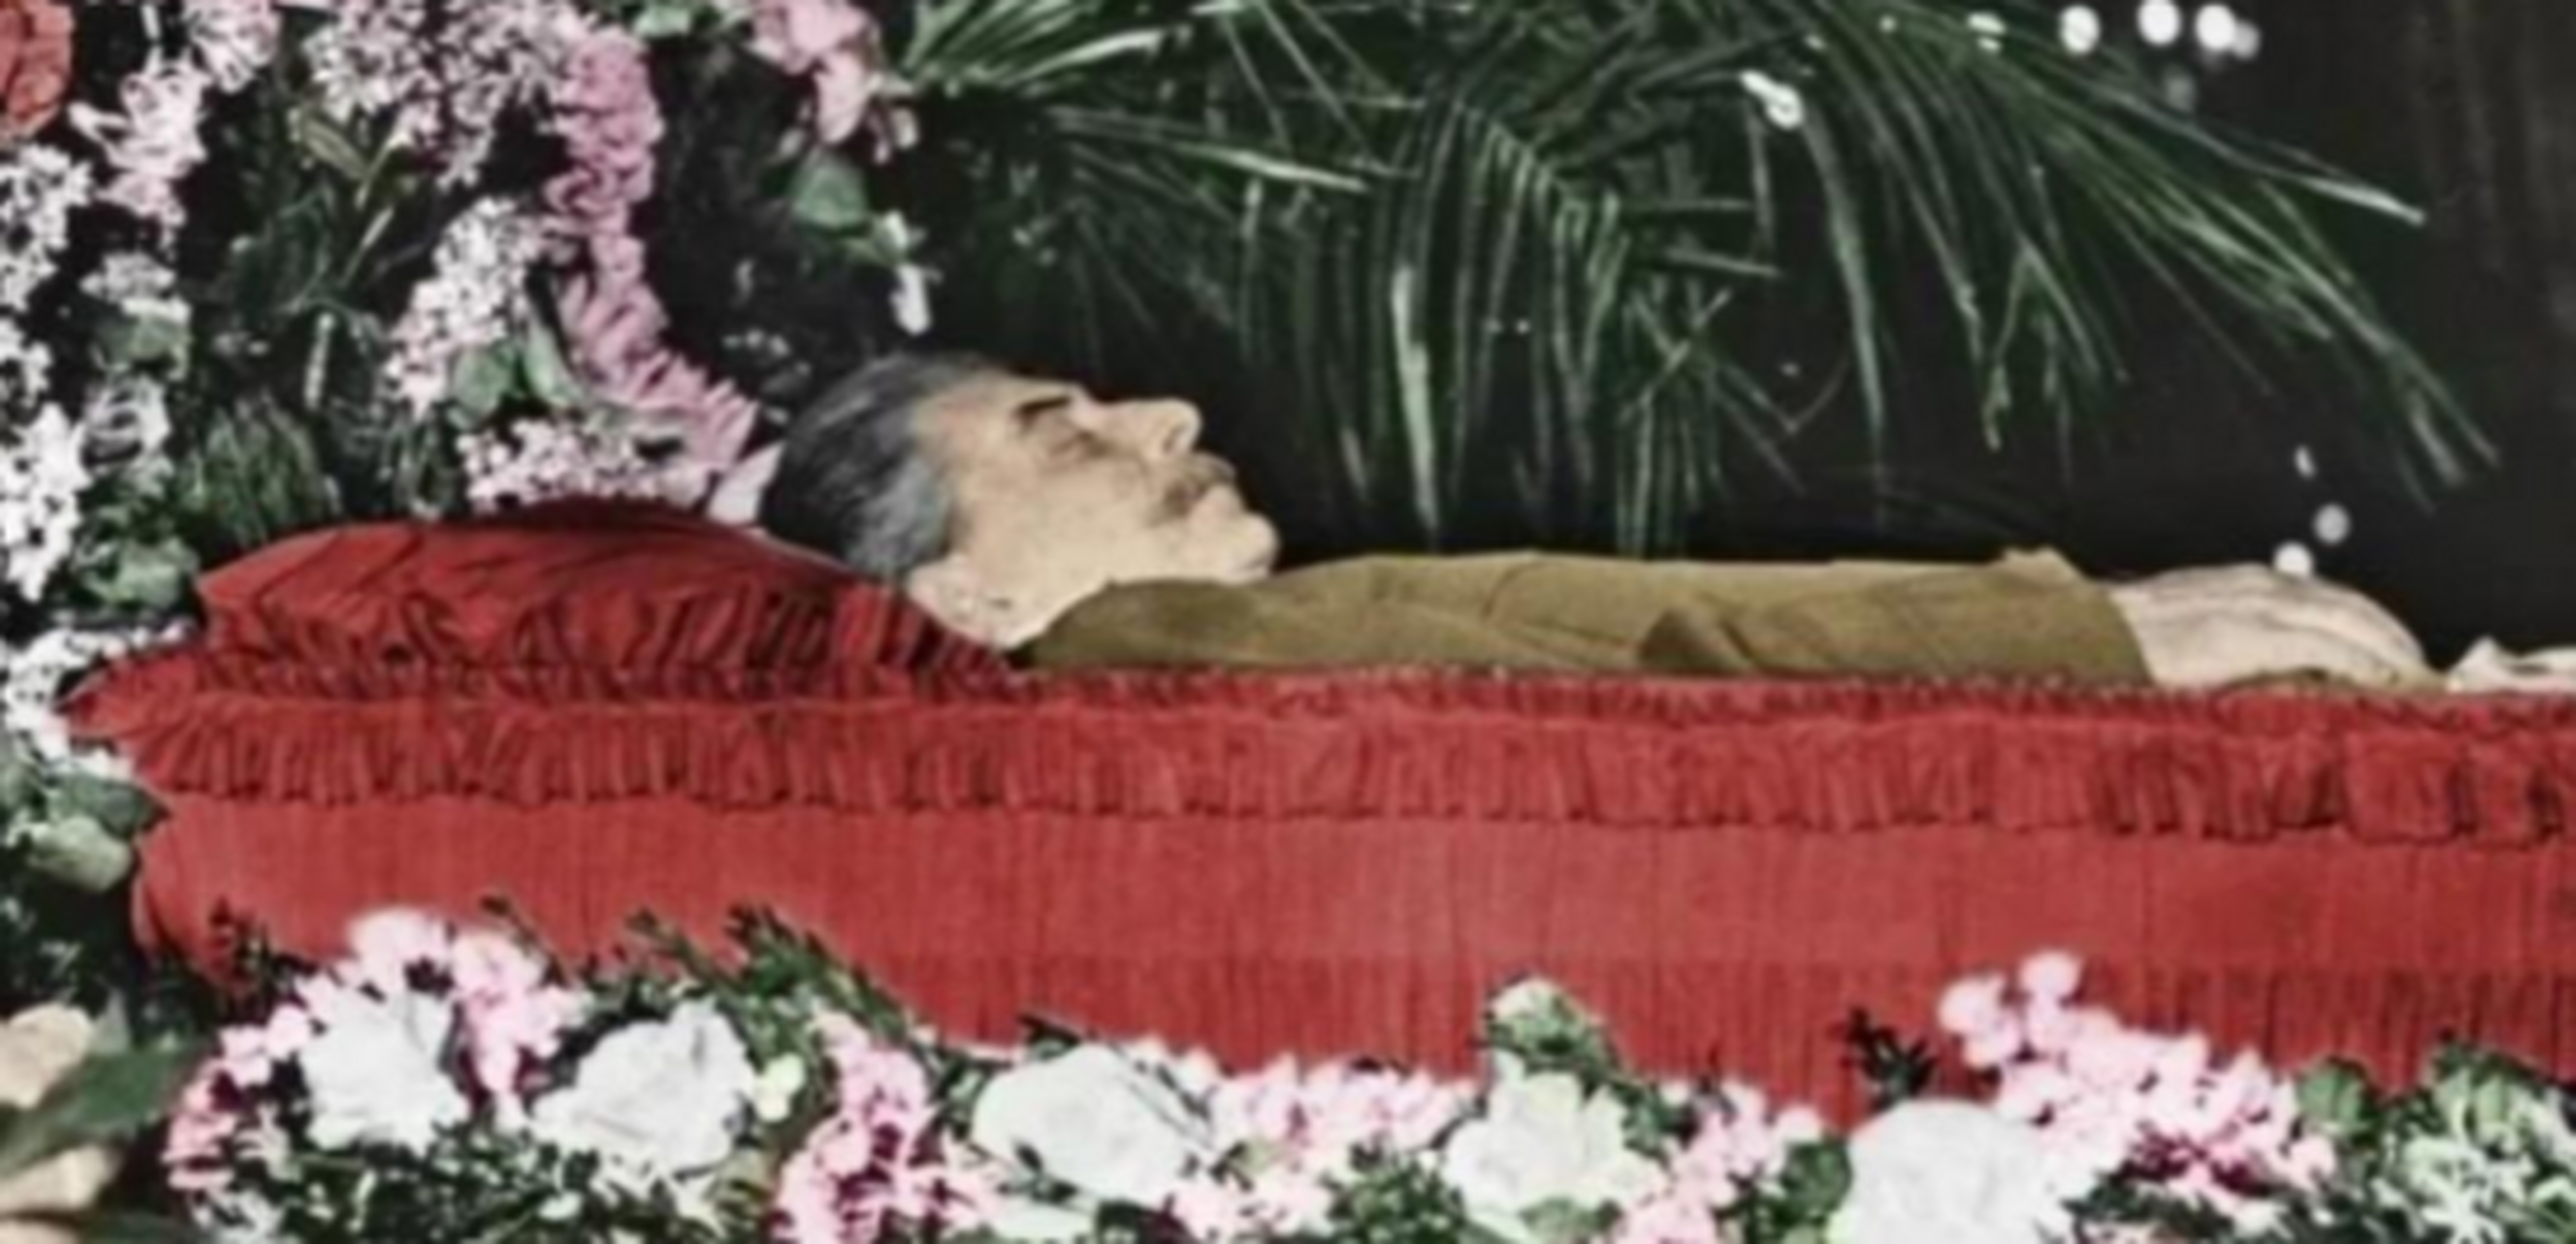 1953年,斯大林去世后,他的遗体被装入水晶棺,并与苏联缔造者列宁安葬